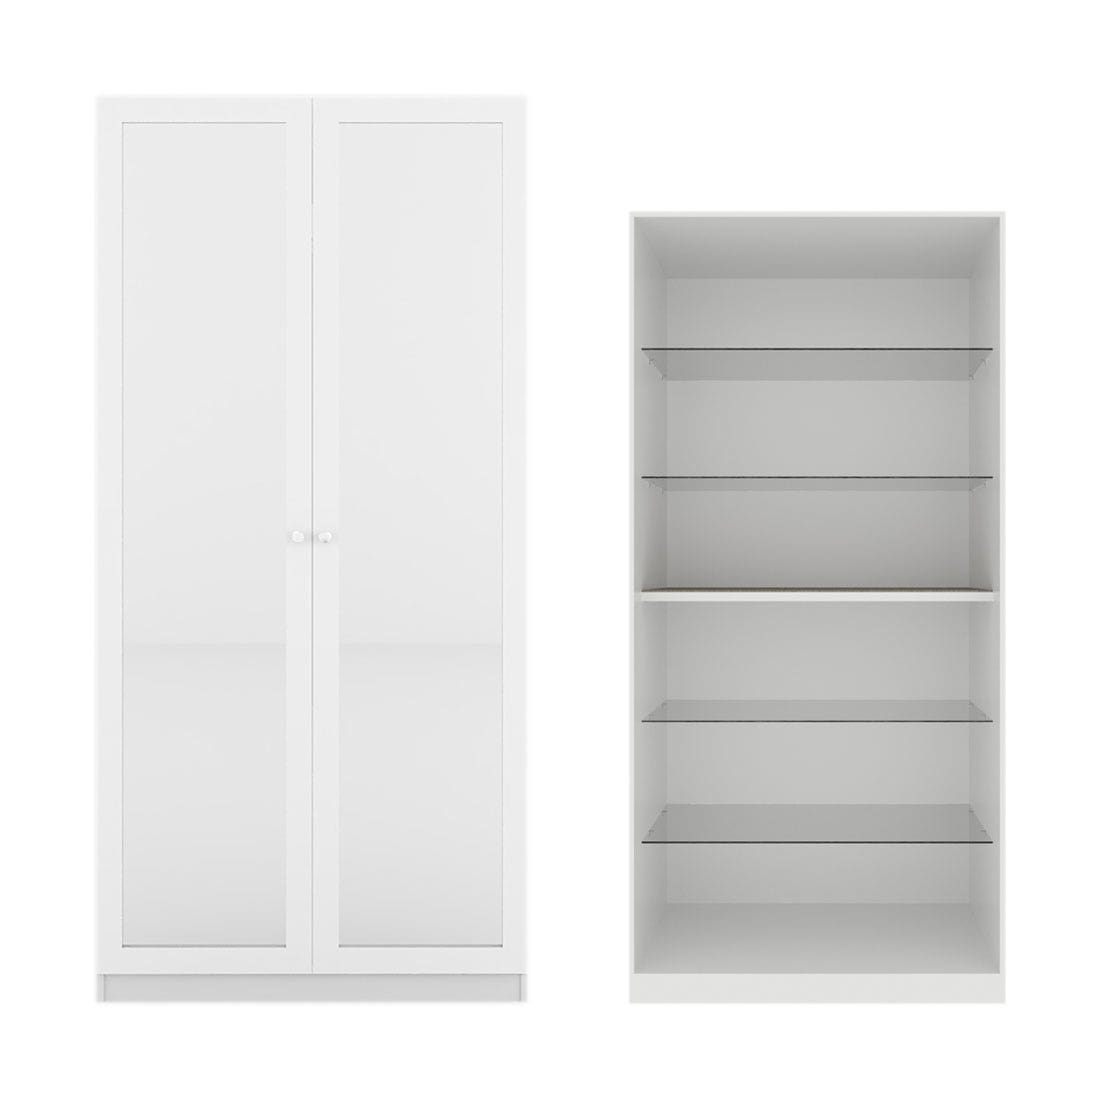 ตู้โชว์ OP-G ขนาด 100 ซม. รุ่น Blox สีขาว Mid Gloss01